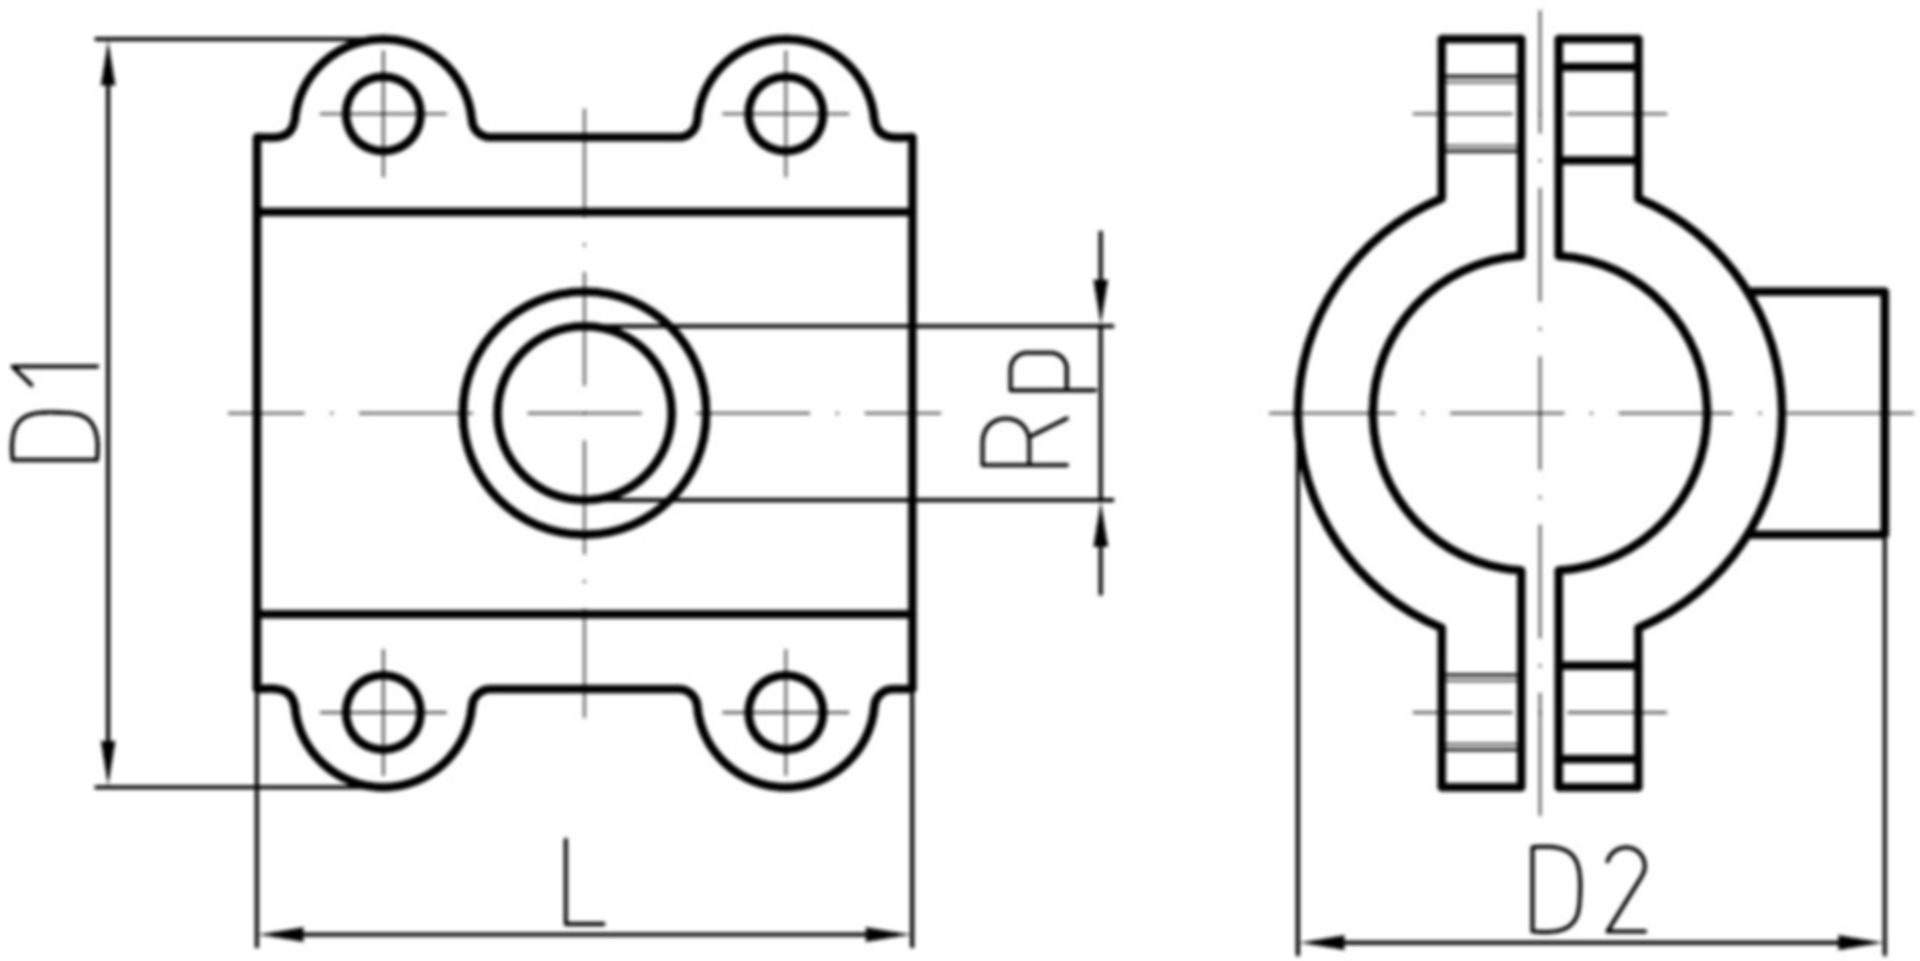 Anbohrschelle EPDM L=70mm 1/2"x1/2" 21.3mm verzinkt, Wasser 16 bar 775 732 051 - GF Primofit